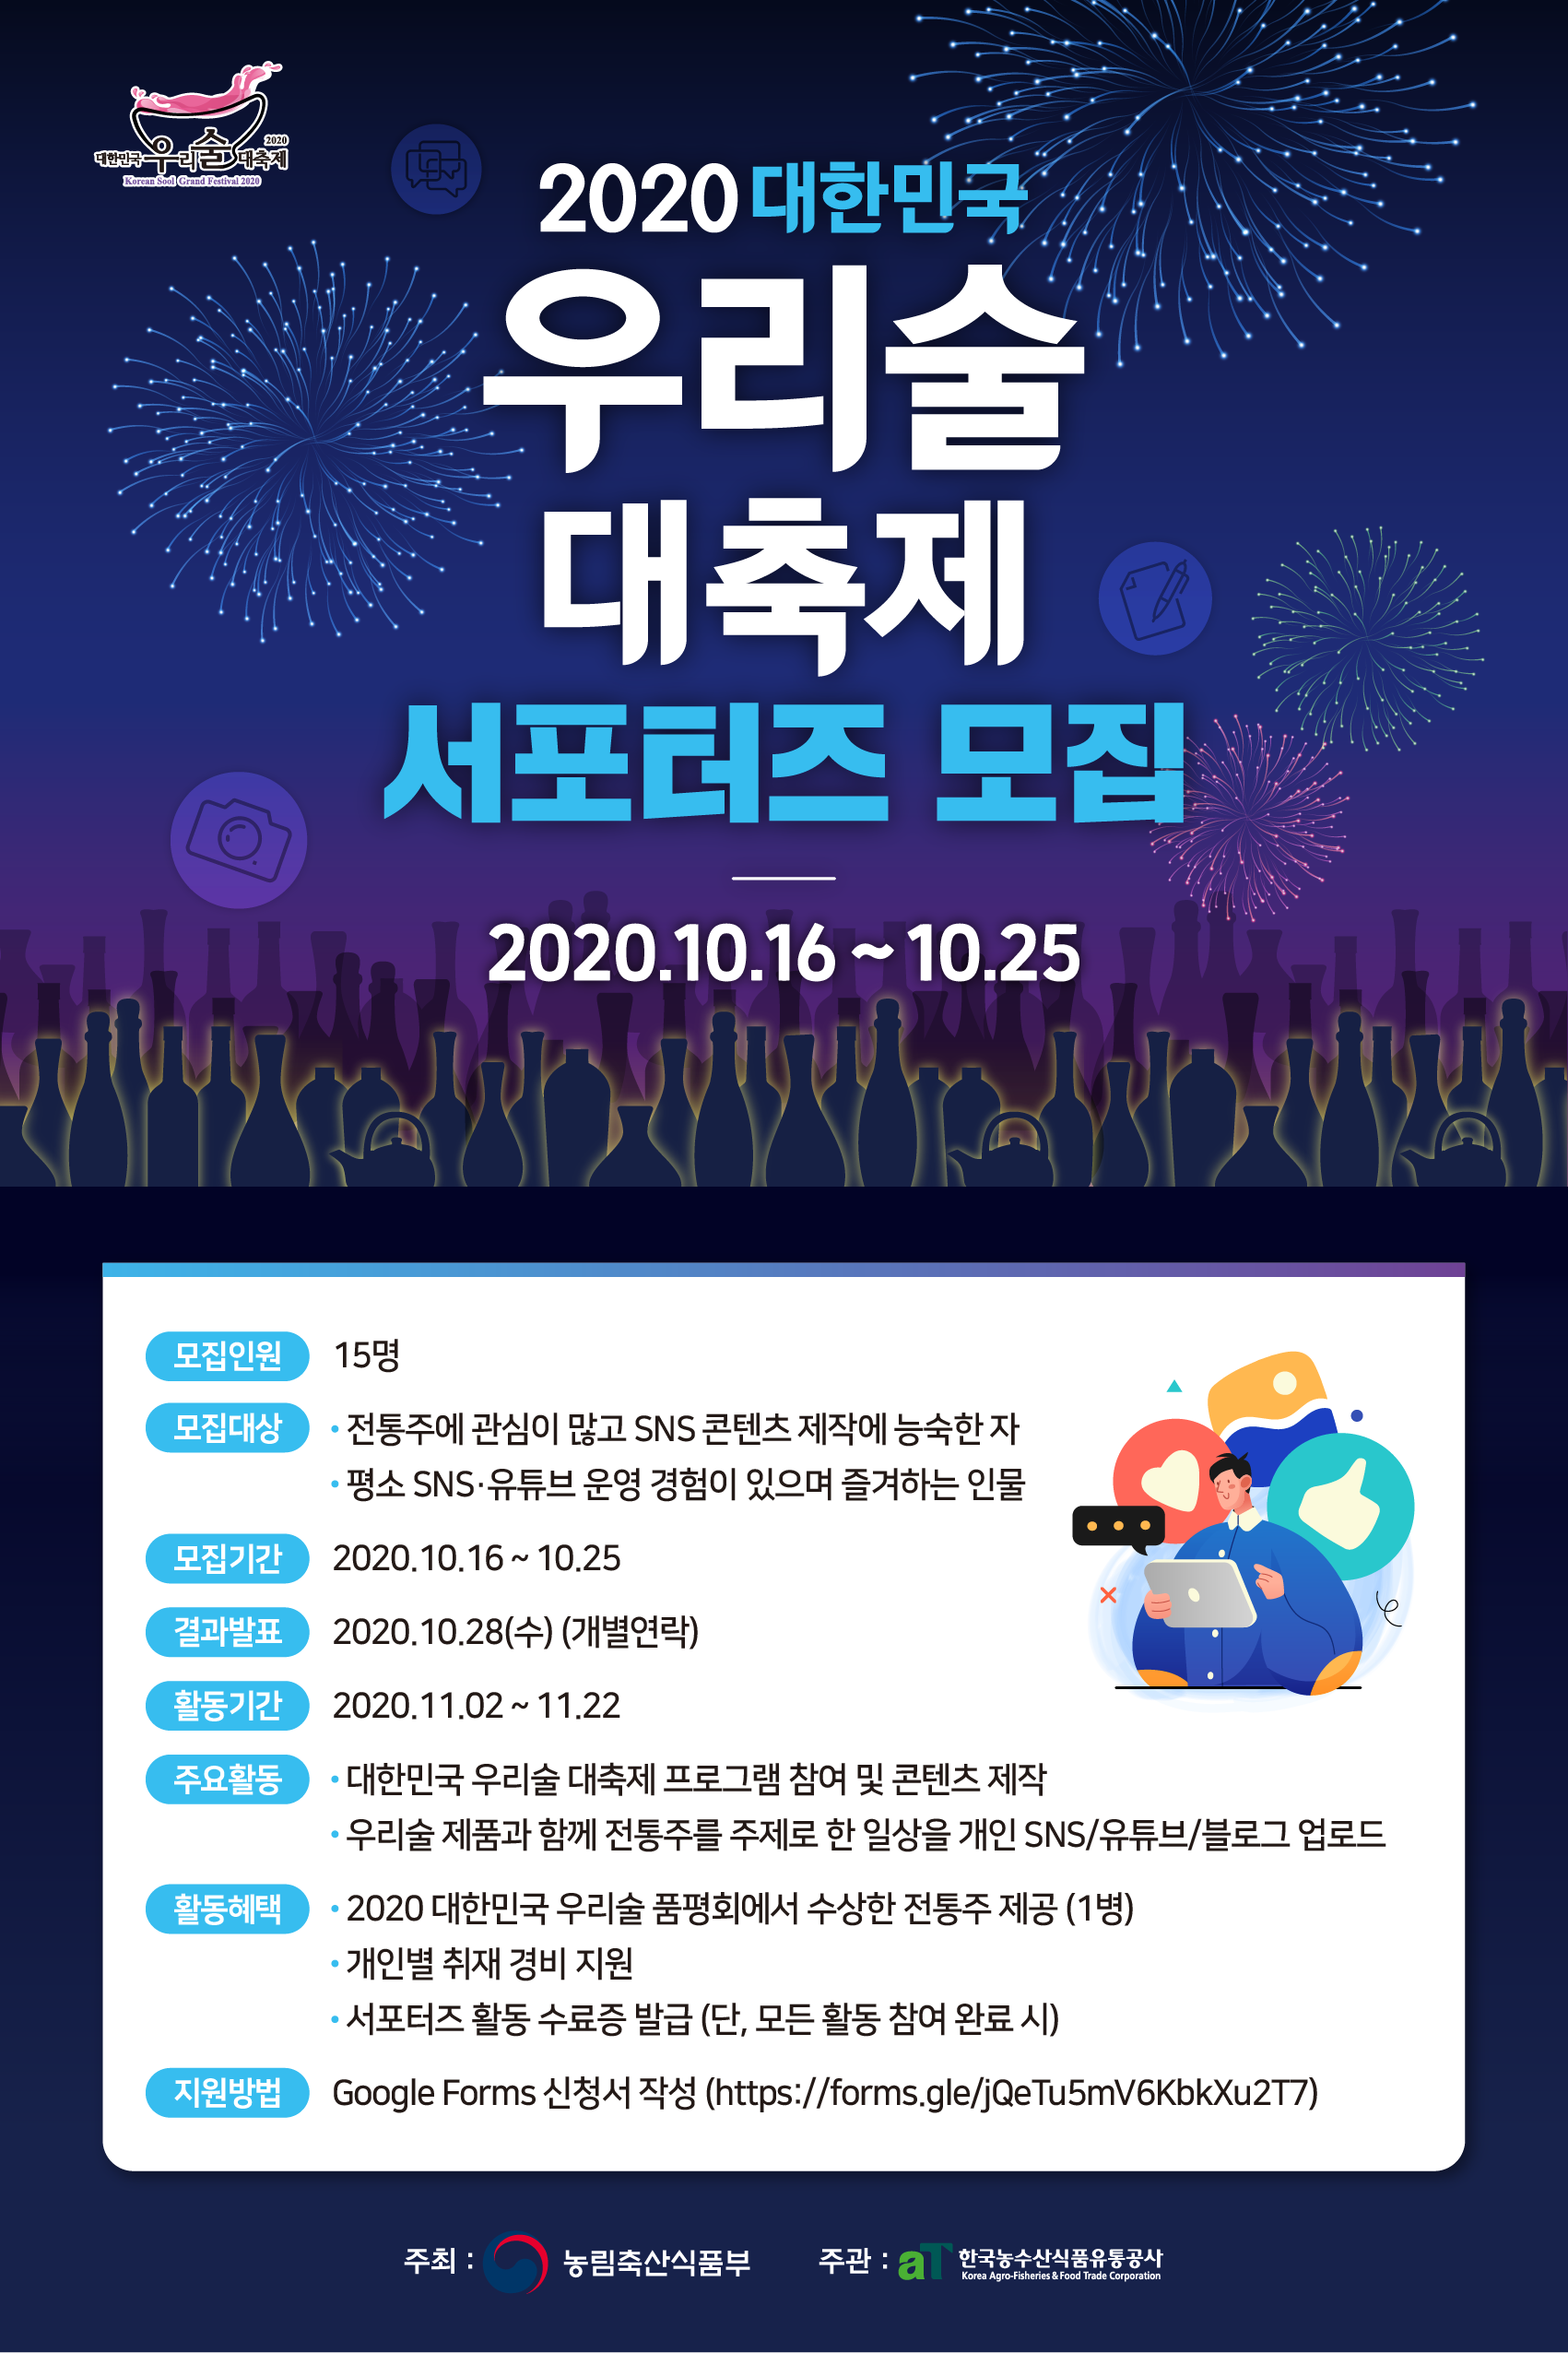 2020 대한민국 우리술 대축제 서포터주(酒) 모집